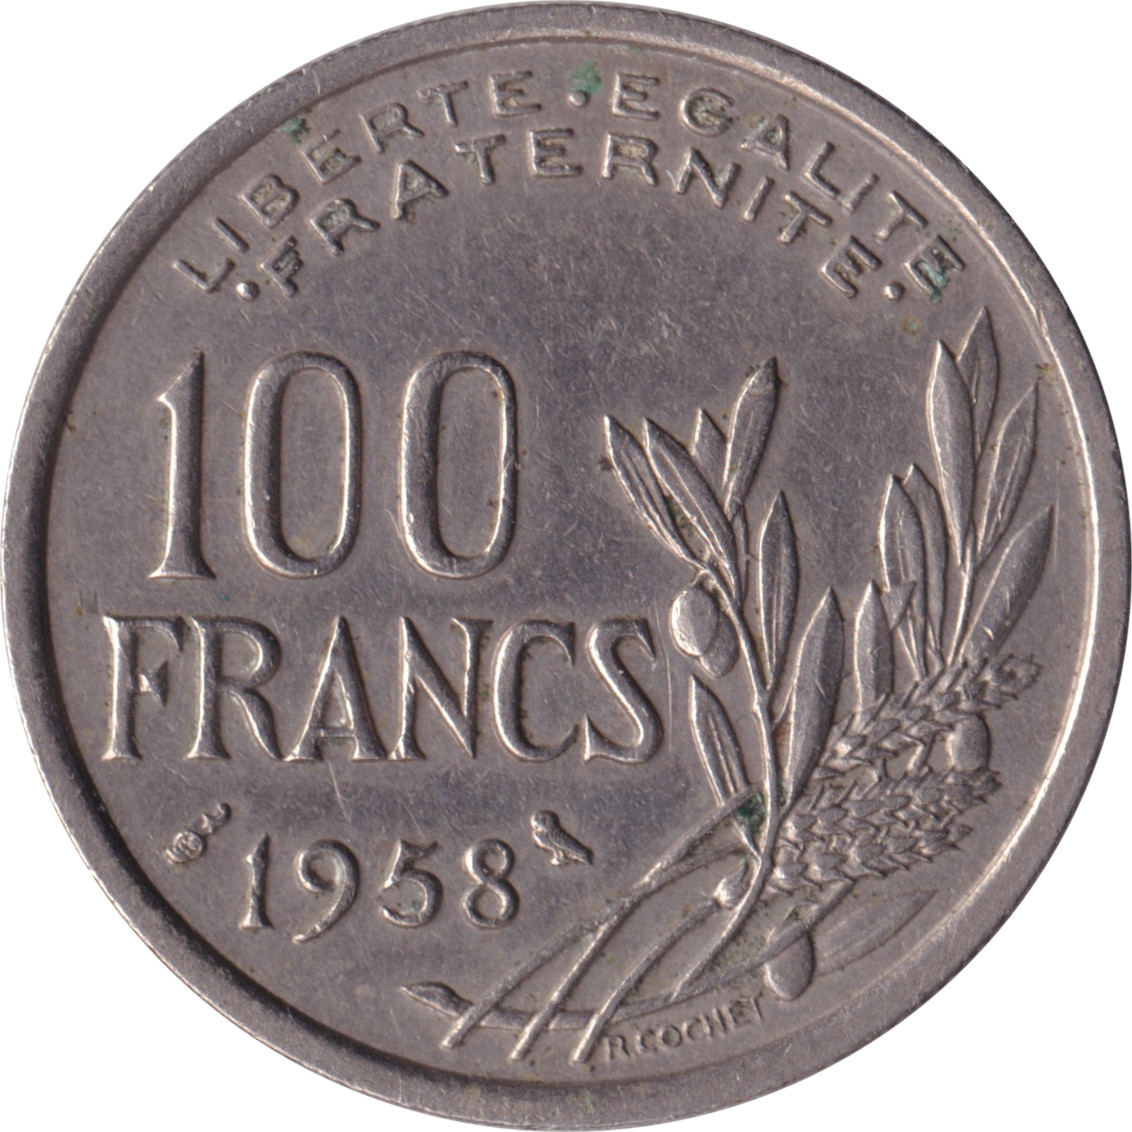 100 francs - Cochet